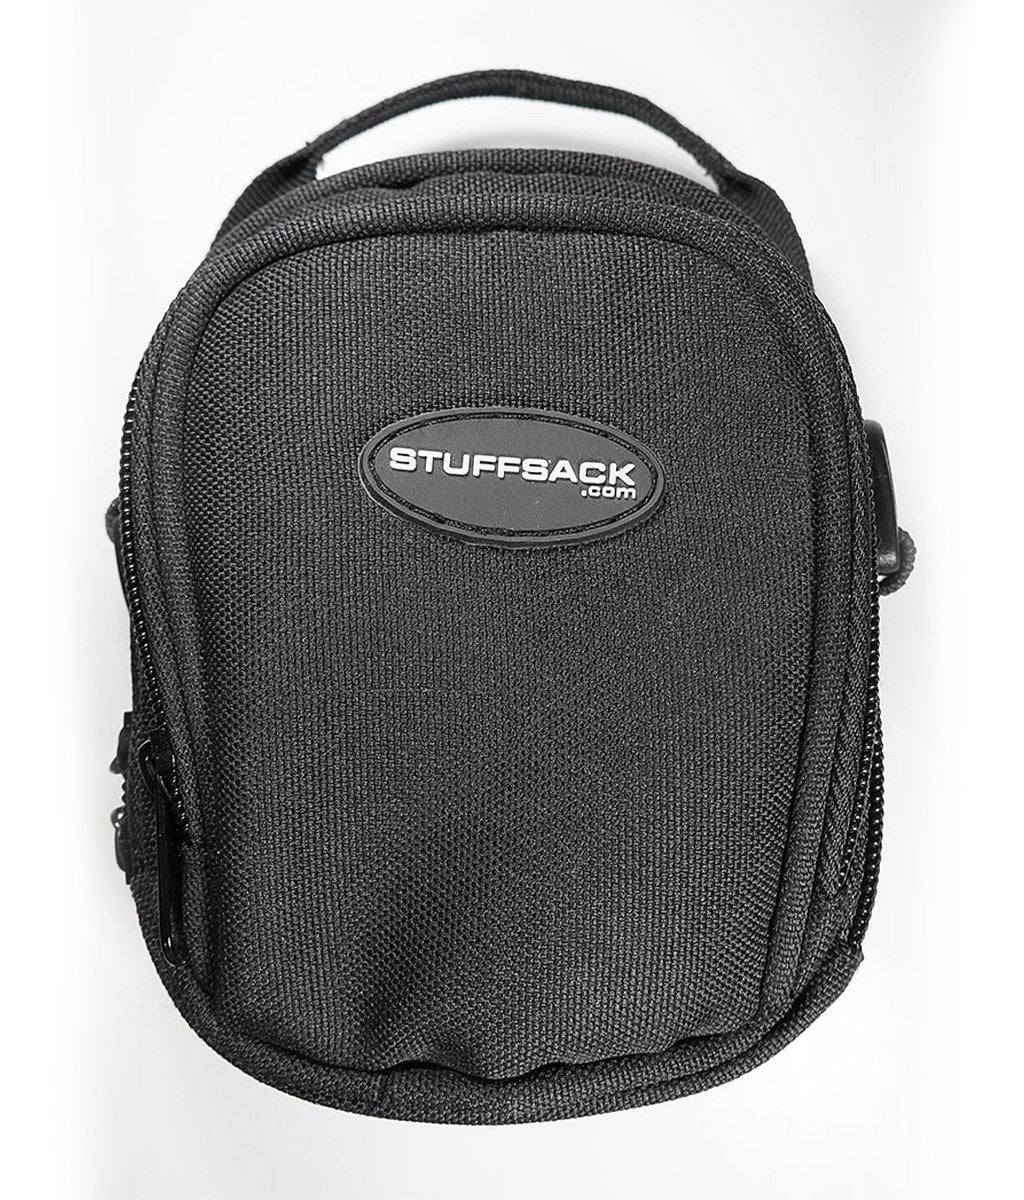 STUFFSACK Geo-S Traveler Trip Bag